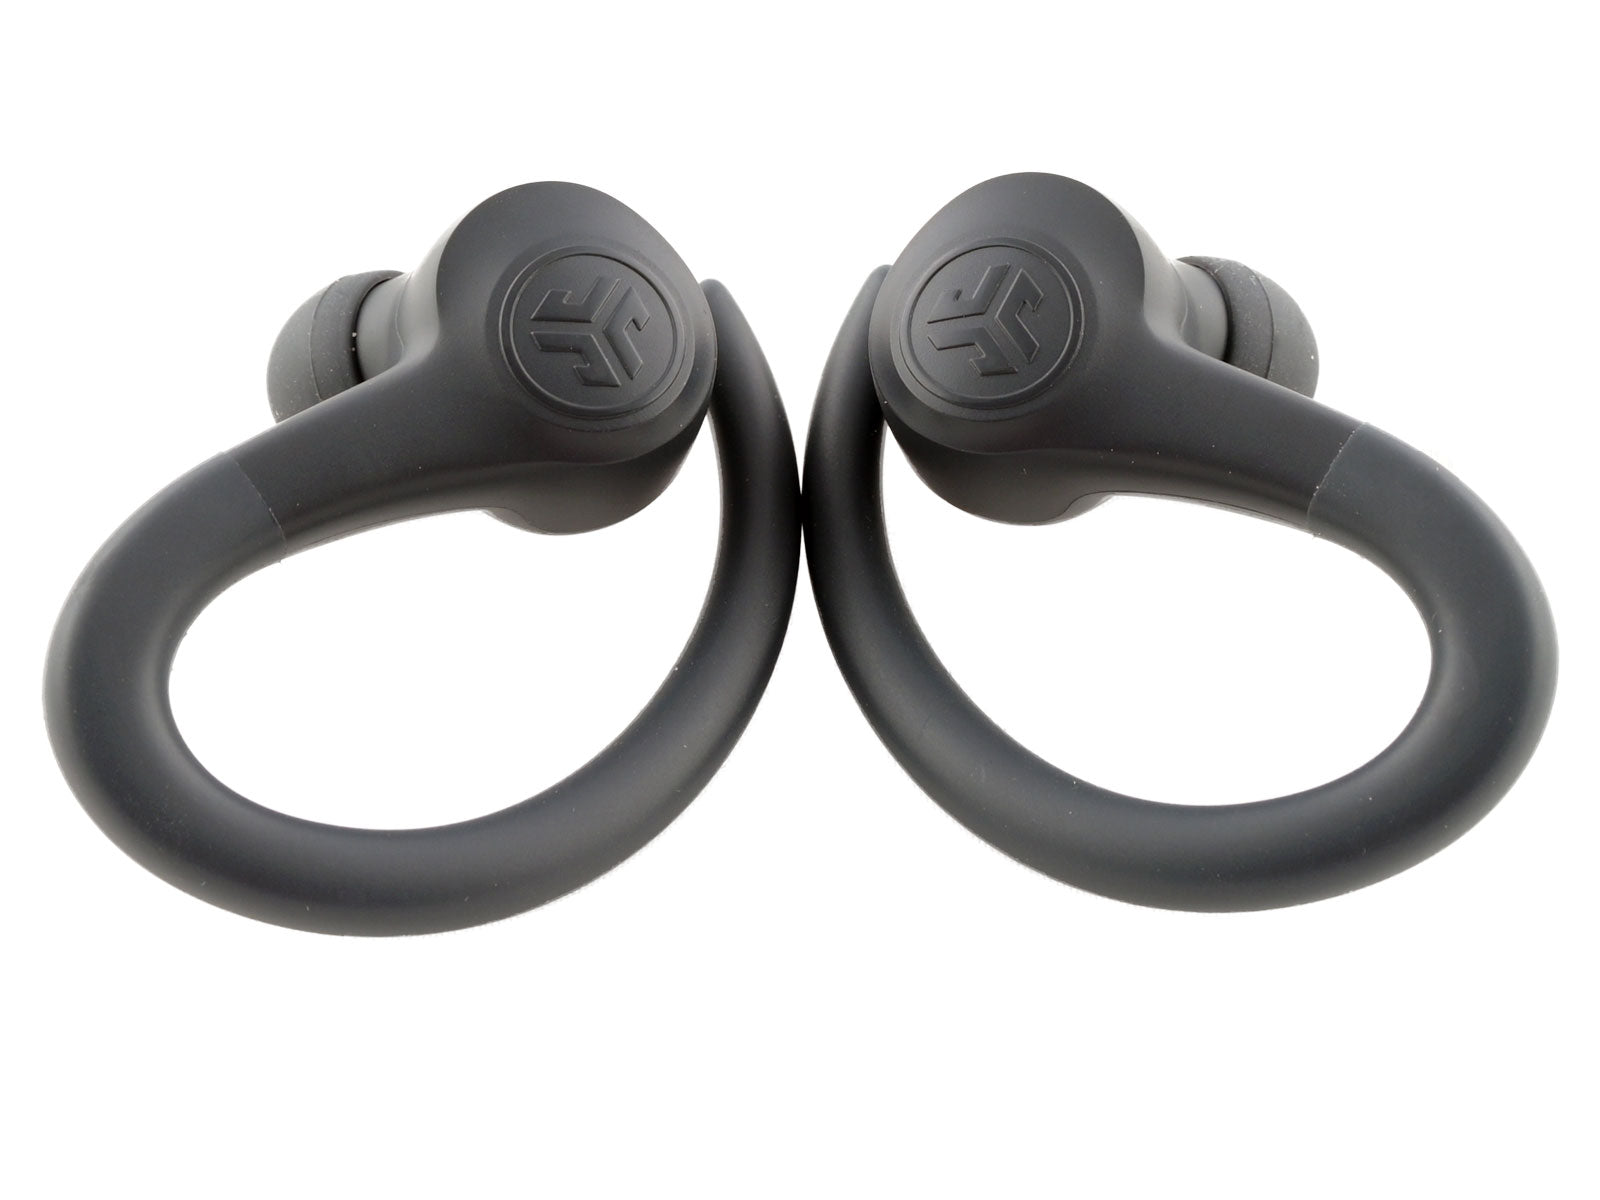 JLab GO Air Sport True Wireless Earbuds In-Ear Kopfhörer Paar schwarze kabellose Ohrhörer, jeweils mit gebogenem, flexiblen Bügel für sicheren Halt, nebeneinander auf weißem Hintergrund.